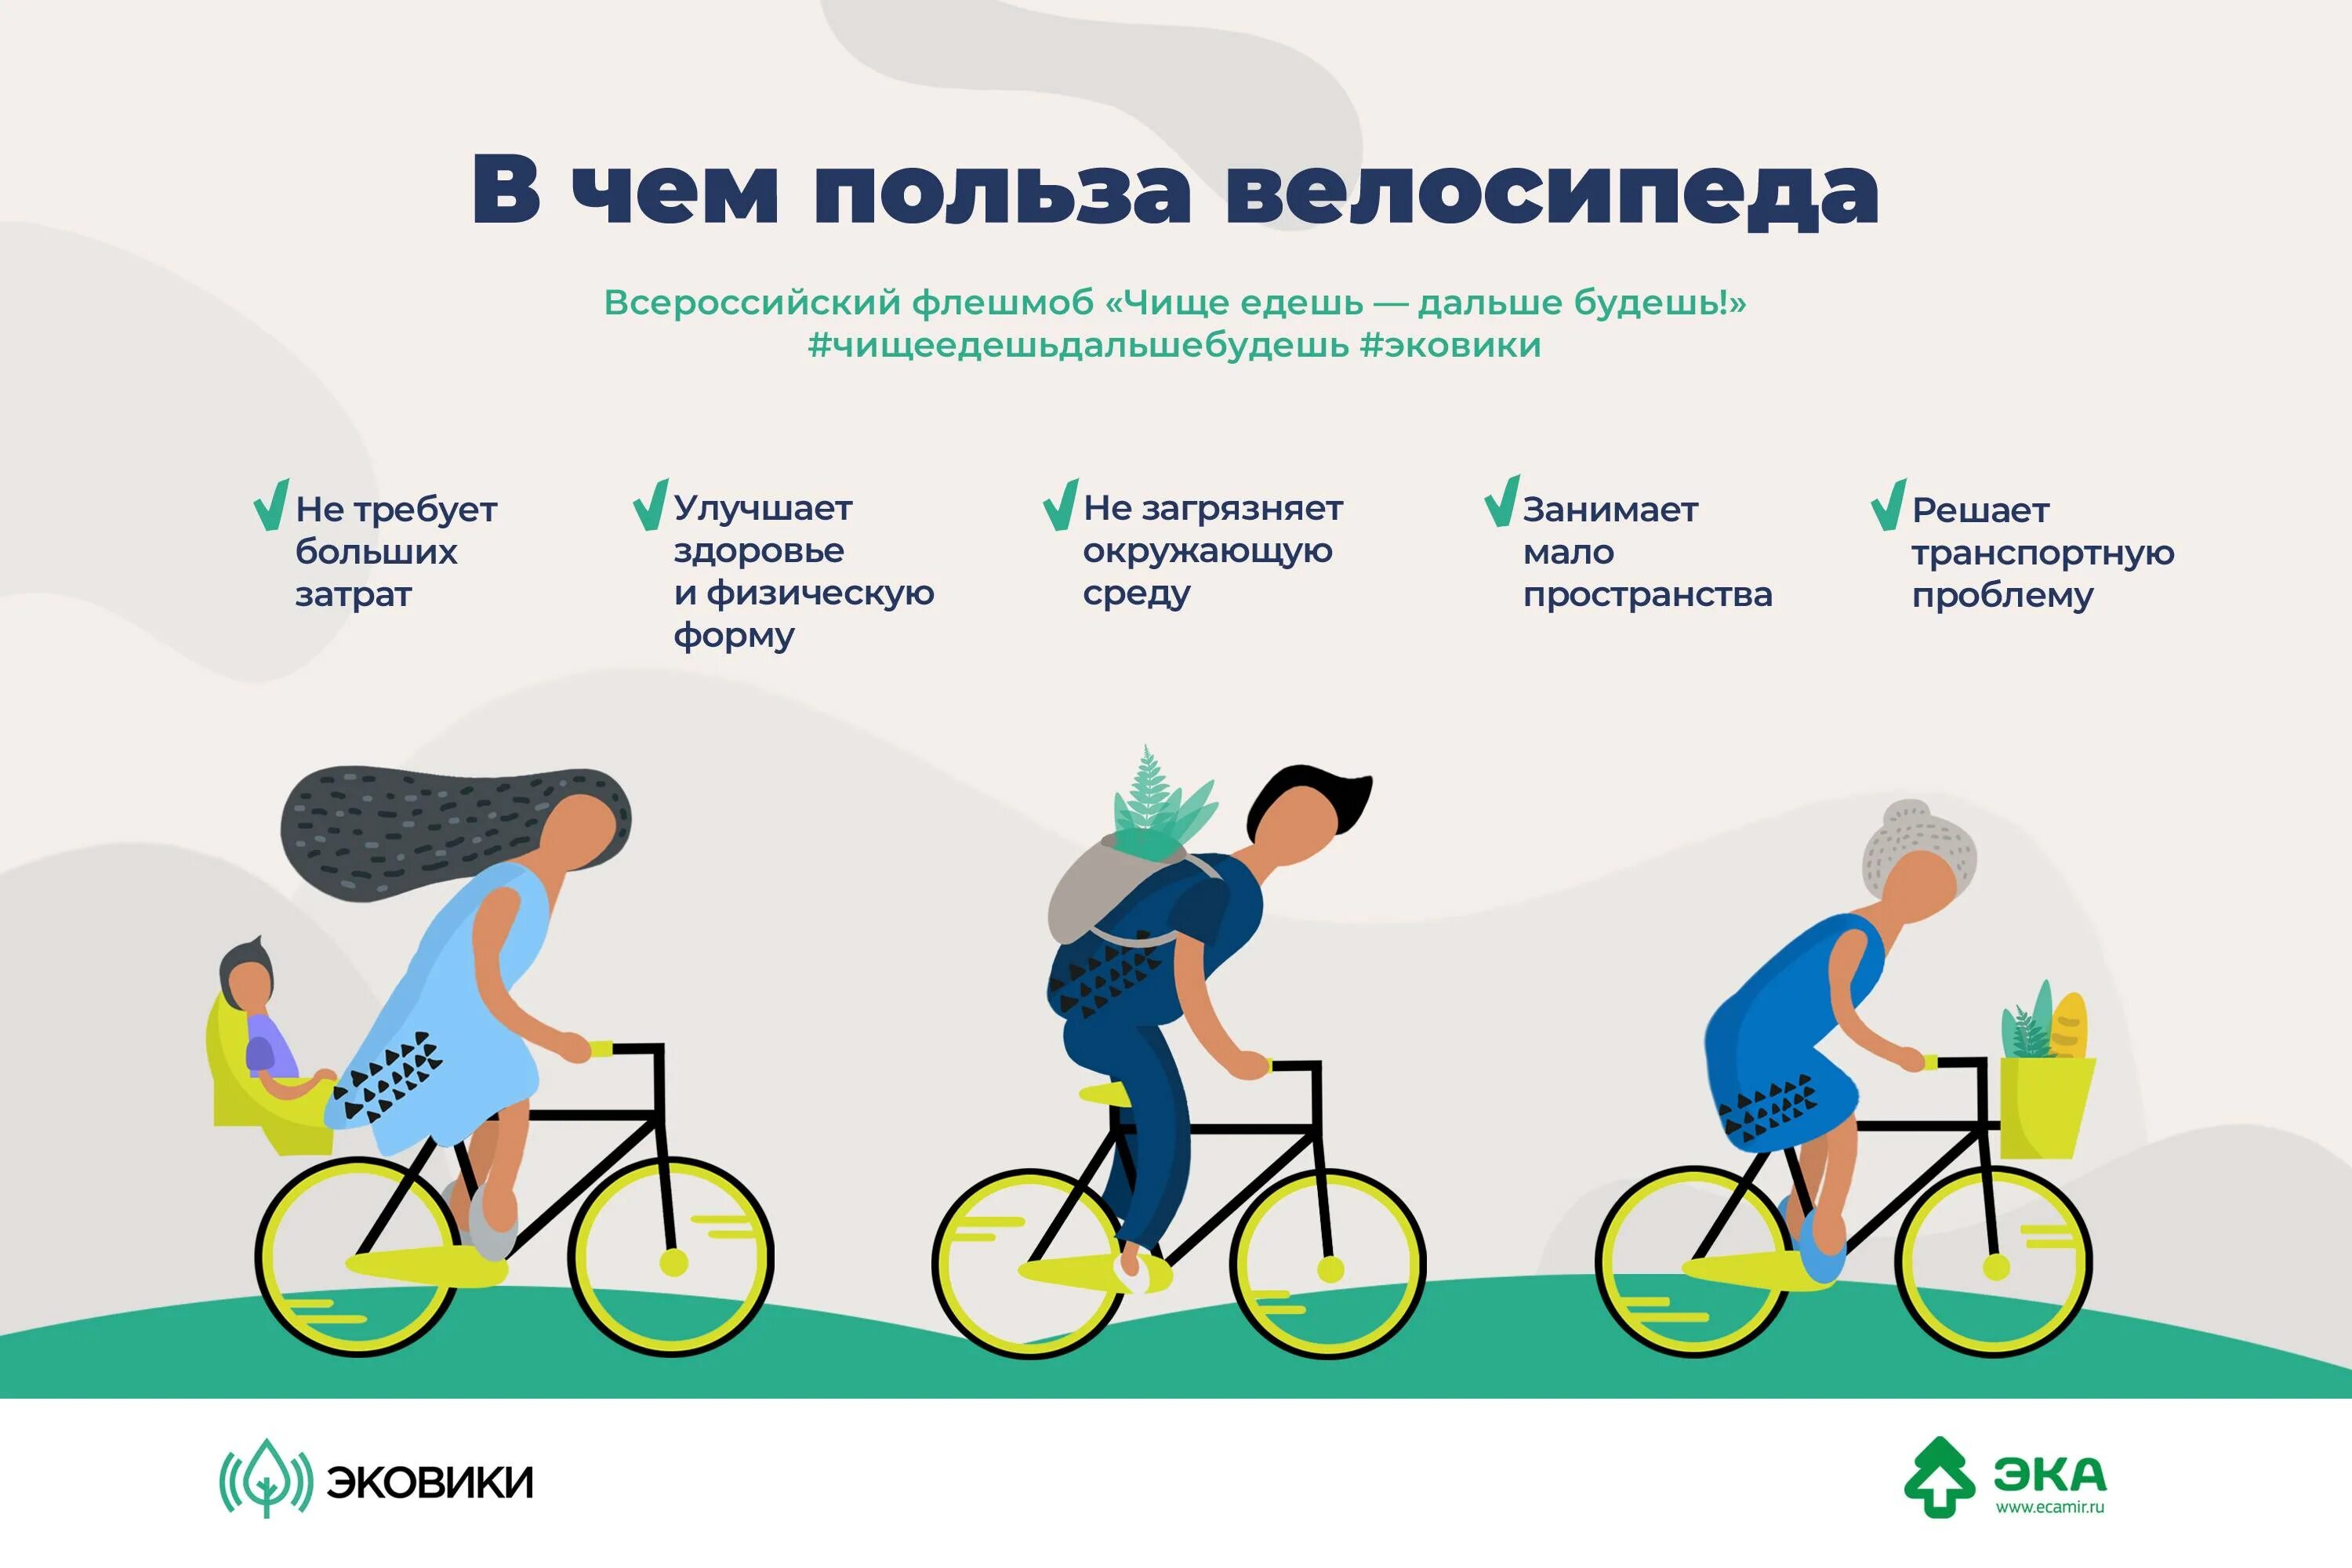 Велосипед какие мышцы работают у женщин. Польза велосипеда. Езда на велосипеде польза. Велосипед и здоровье. Велосипед полезно для здоровья.